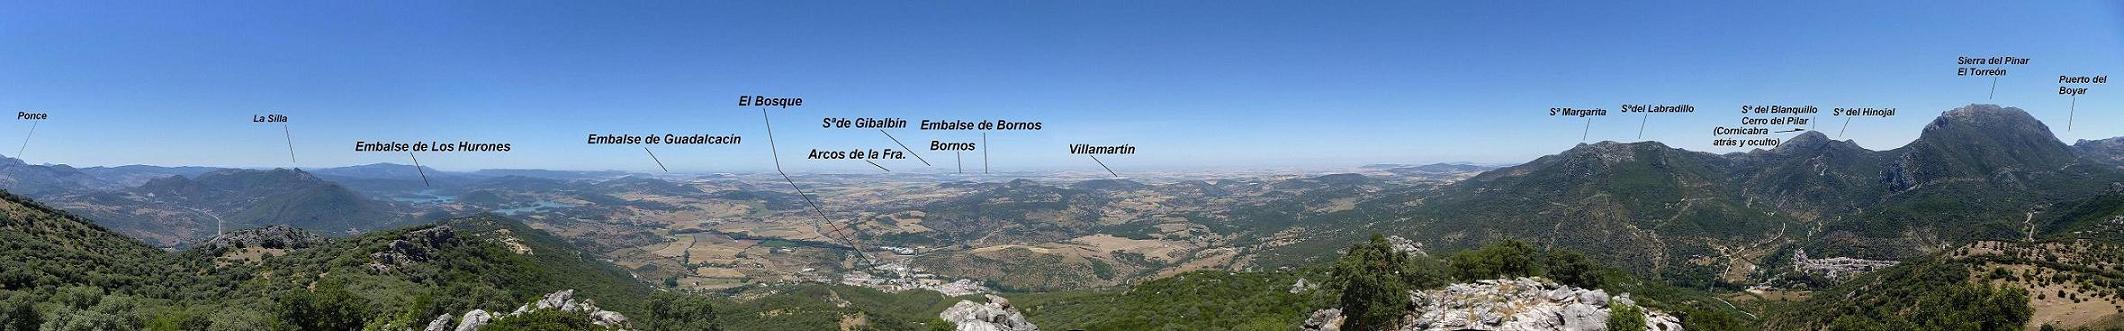 2-Panorámica dirección Albarracín -El Bosque -foto junio2014.jpg